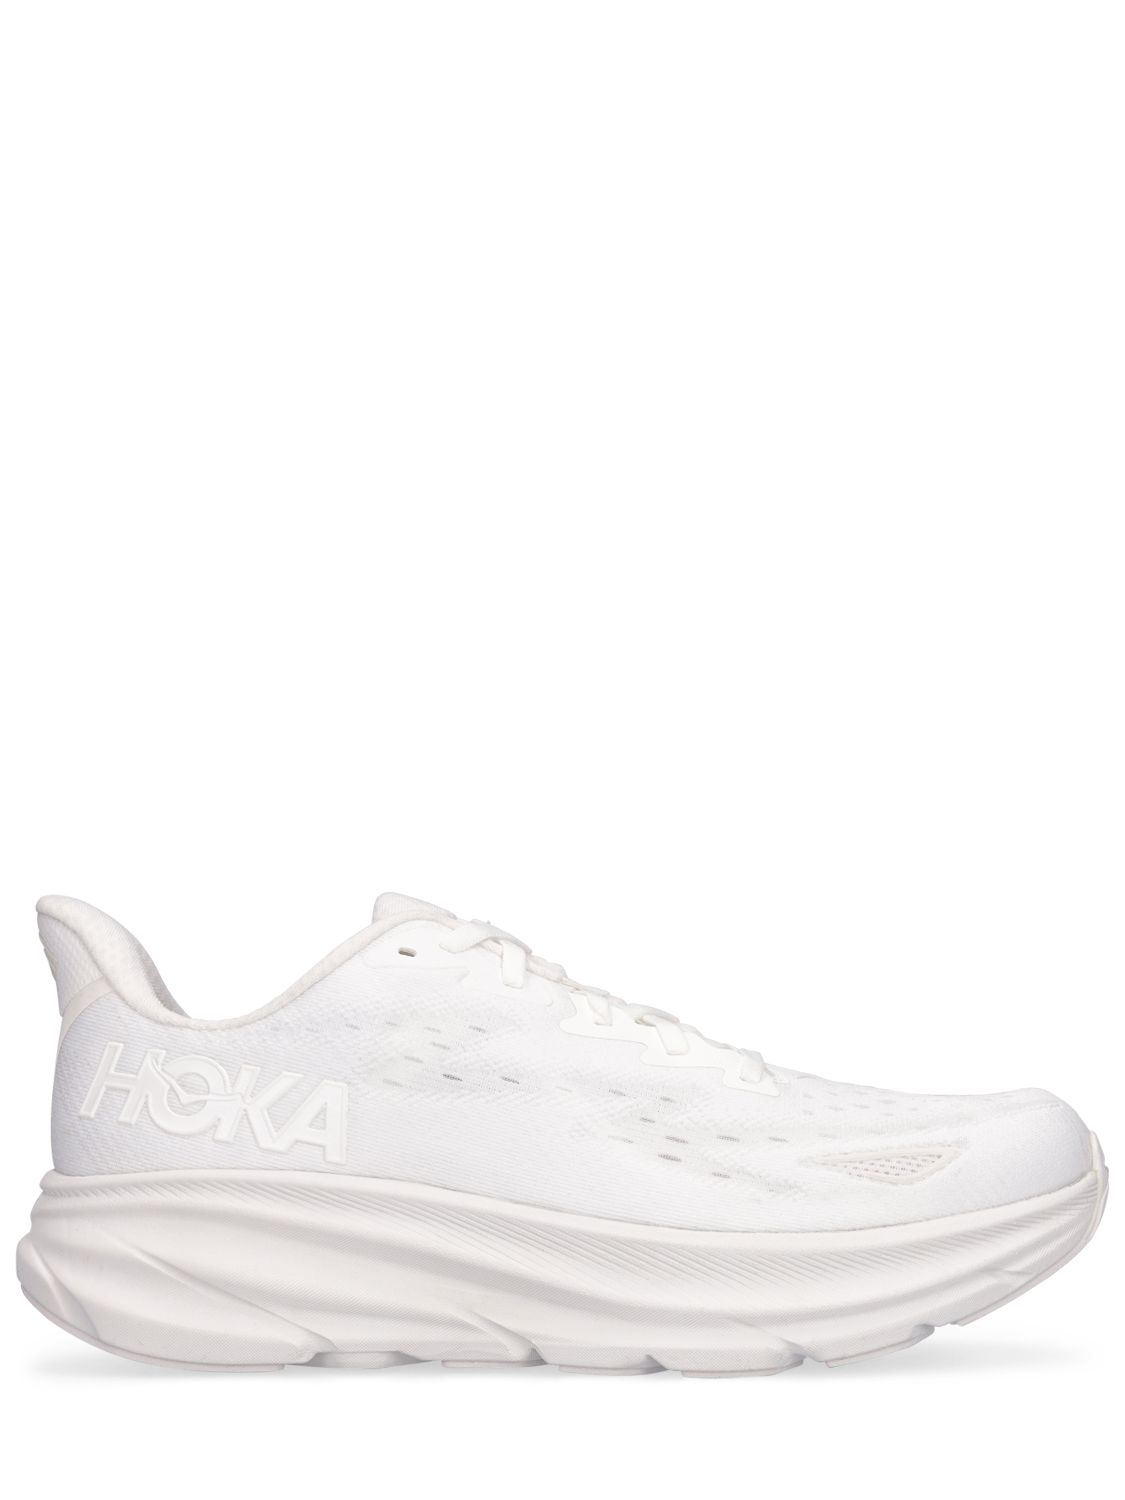 Hoka Clifton 9 Sneakers In White